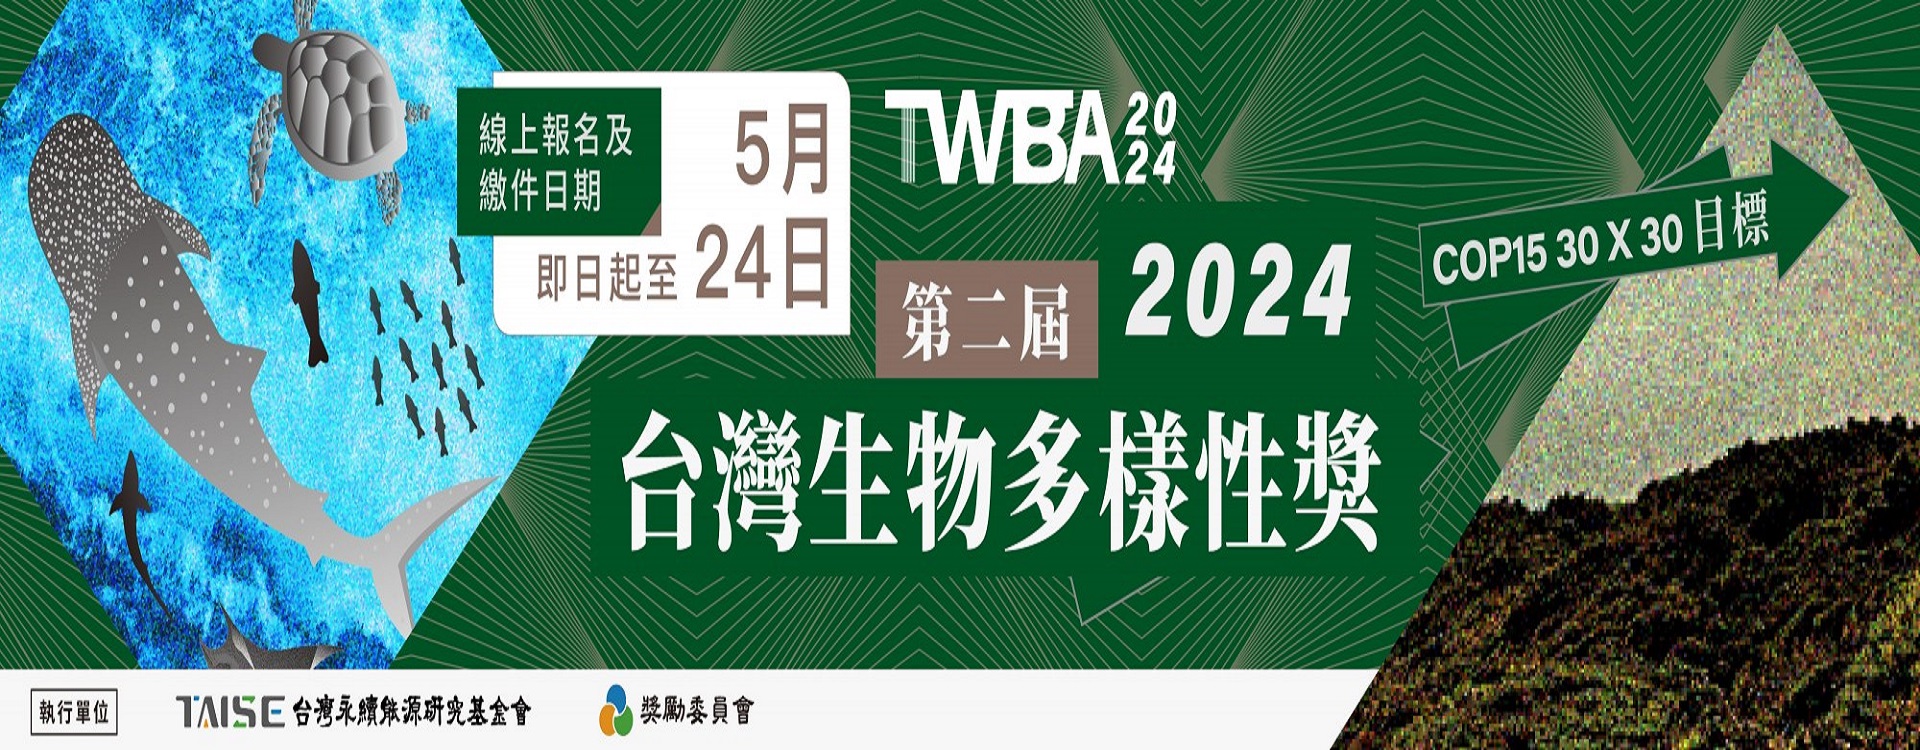 2024年 第二屆TWBA台灣生物多樣性獎